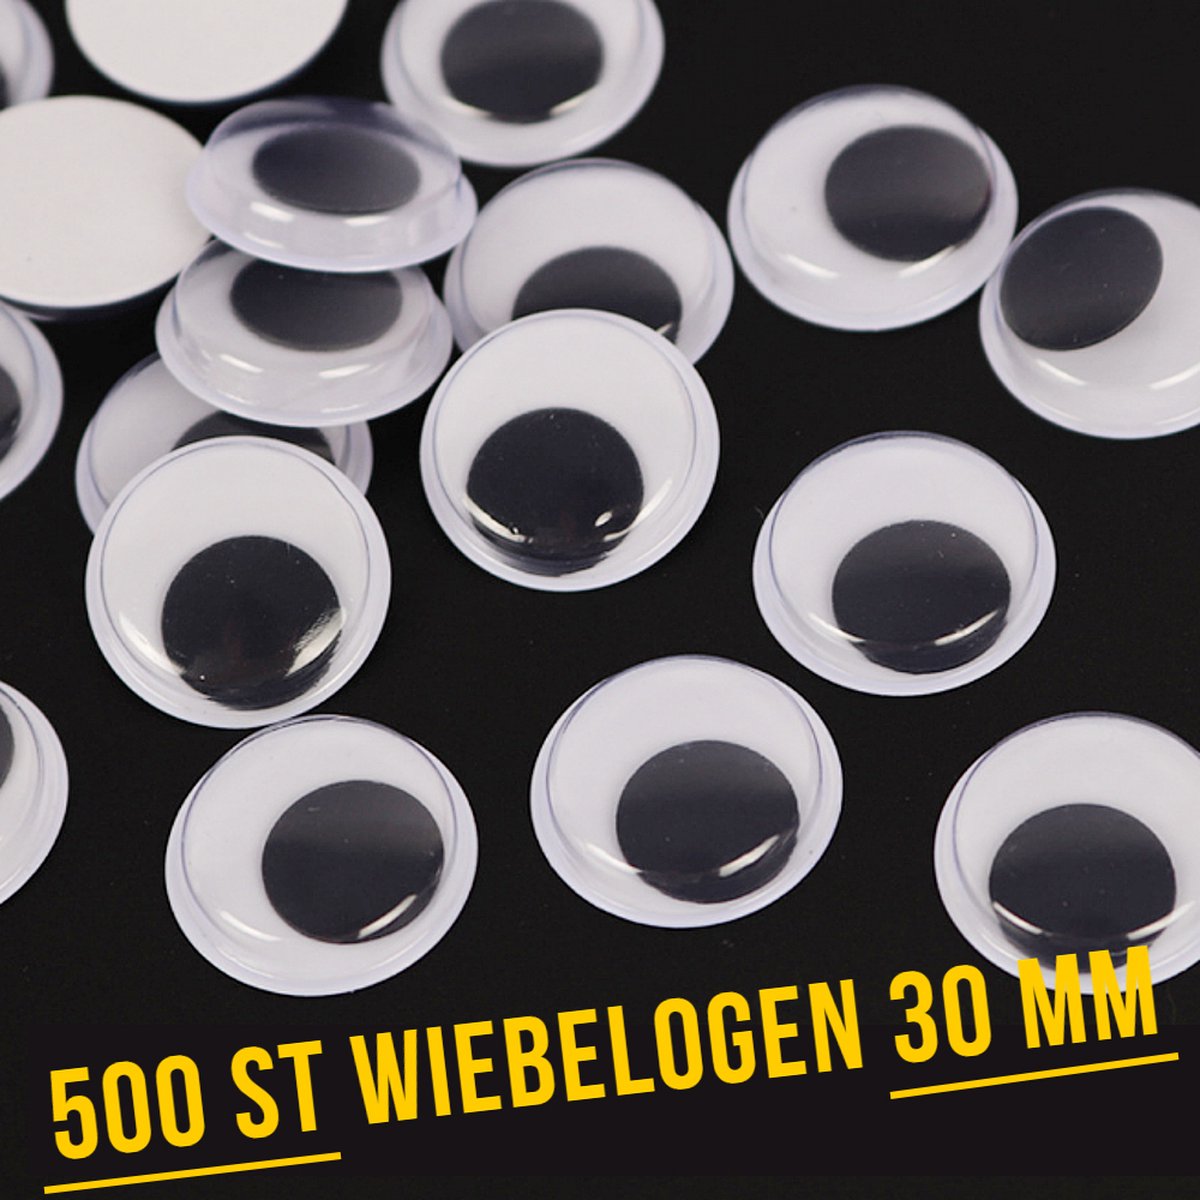 Allernieuwste.nl® 500 Stuks Wiebelogen 30 mm - Bewegende Zelfklevende Wiebel Oogjes 3 cm - Creatieve Knutsel Ogen 30 mm - wit zwart